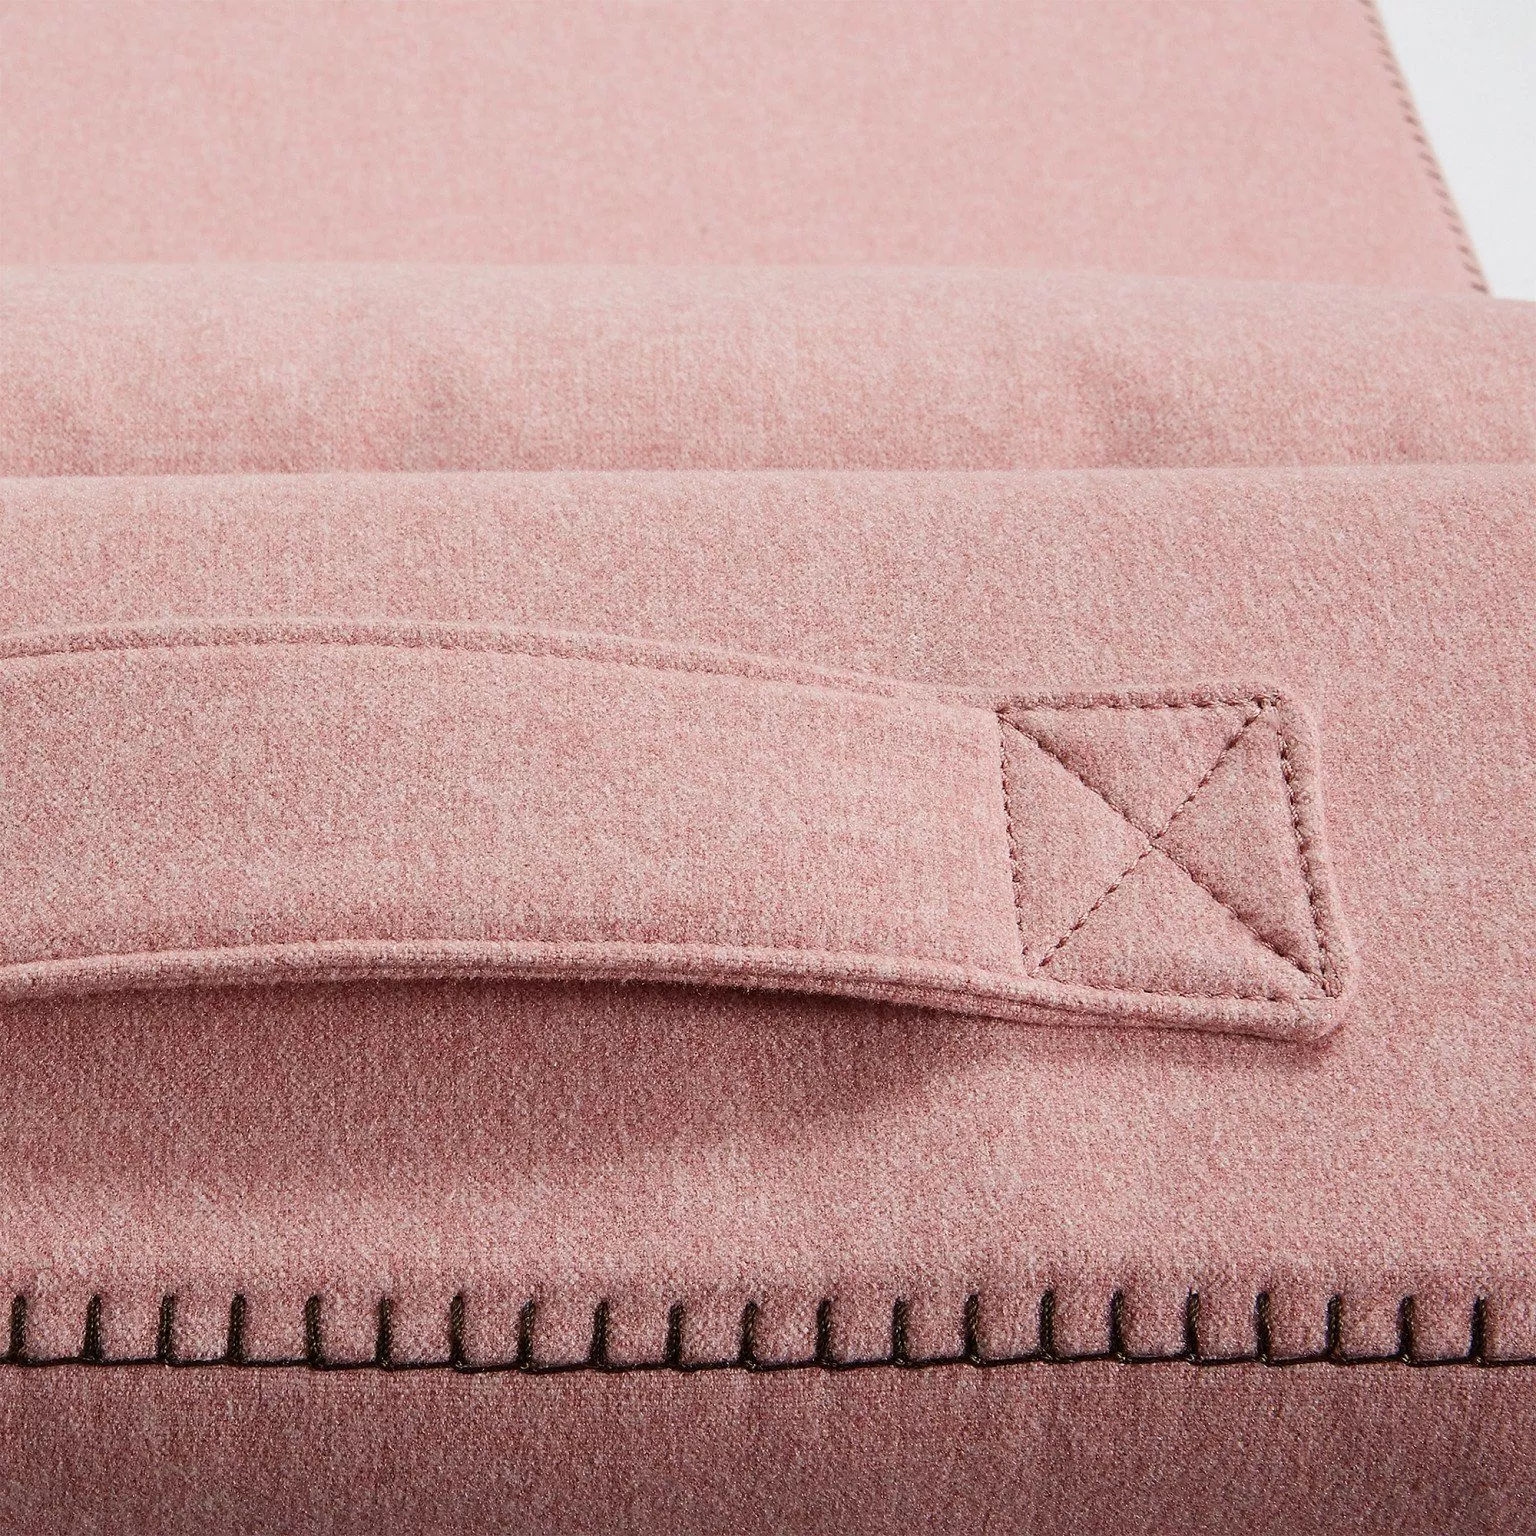 Пуф-кровать La Forma Arty розовый